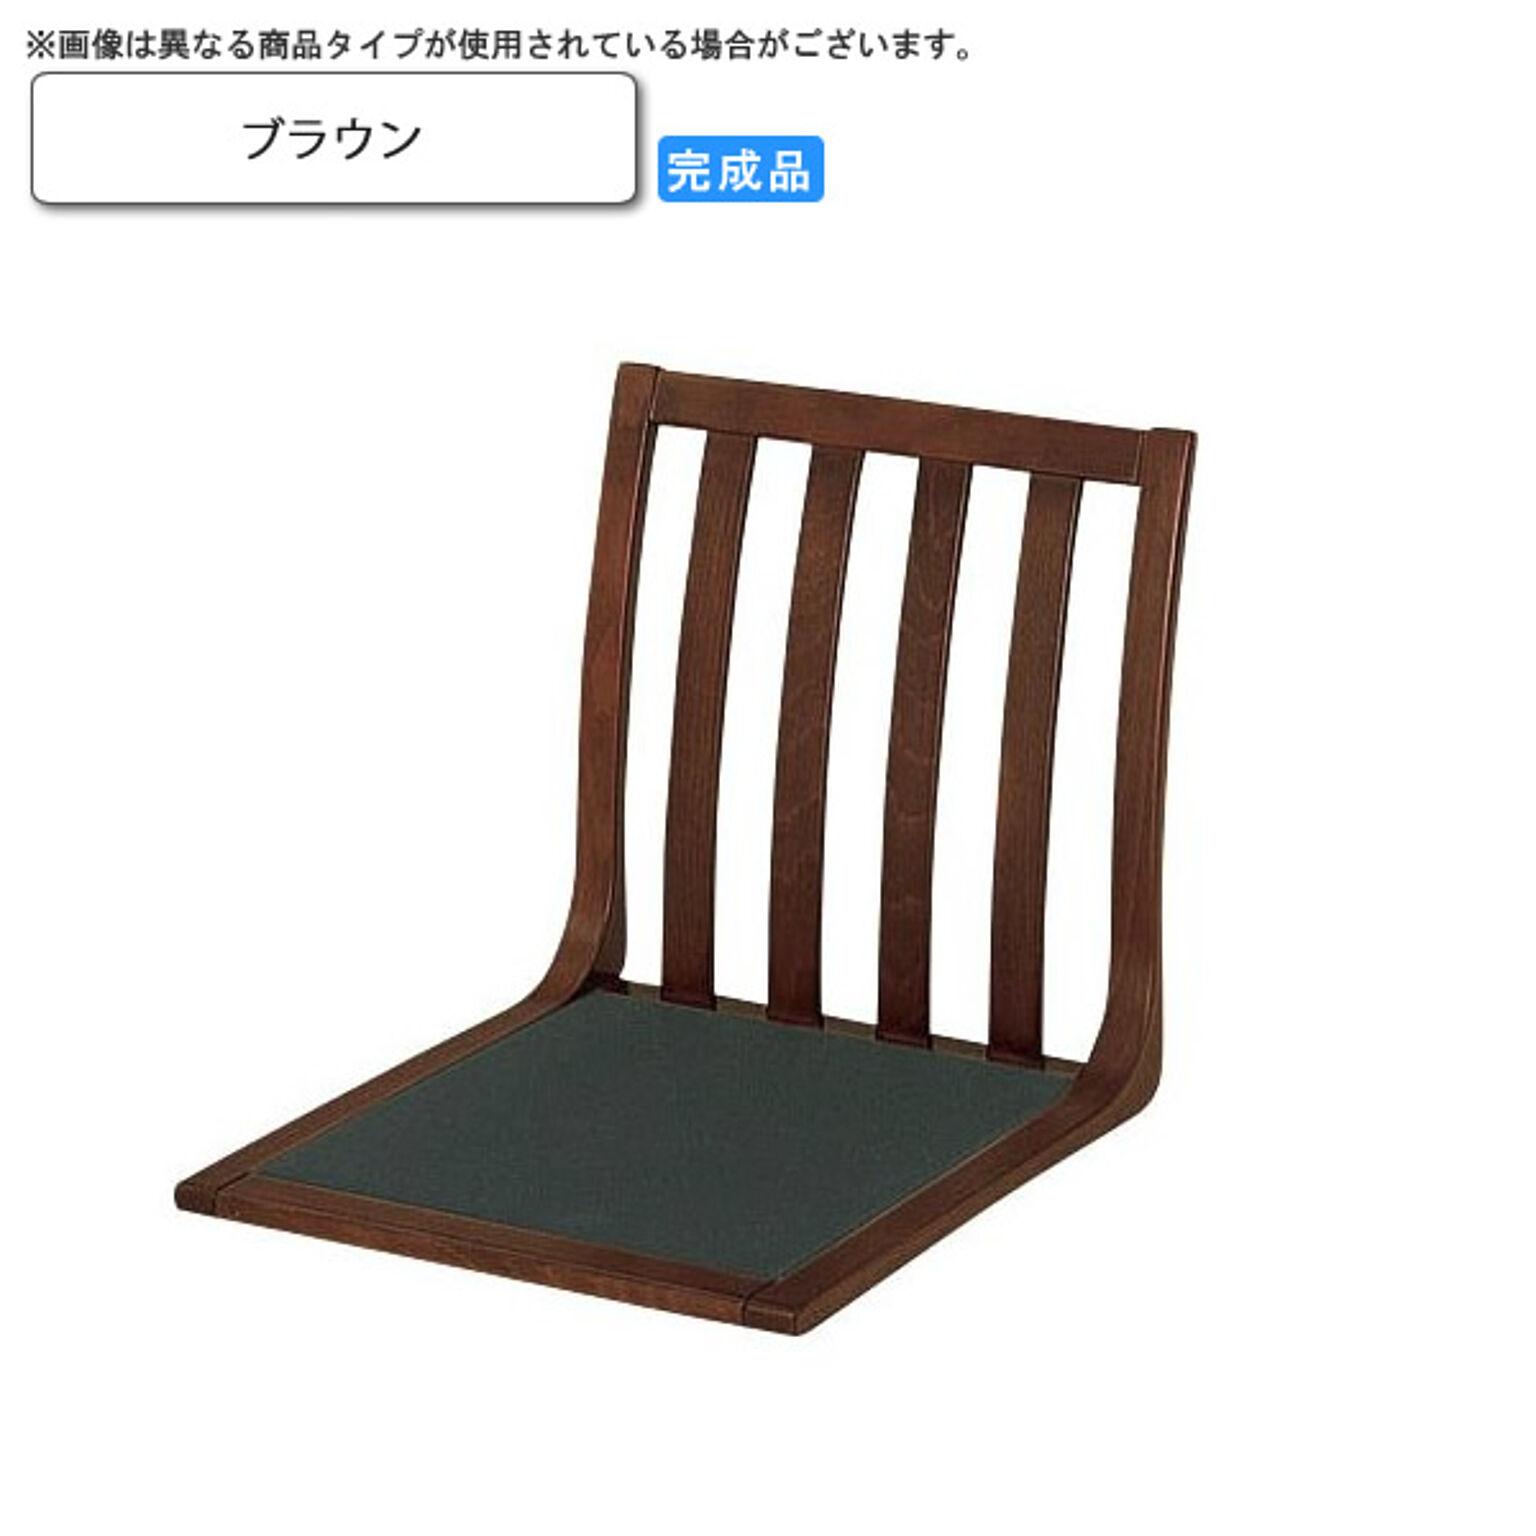 座椅子 ブラウン 座椅子 業務用家具：wood japaneseシリーズ★ ケーフ ブラウン(brown) (和風)